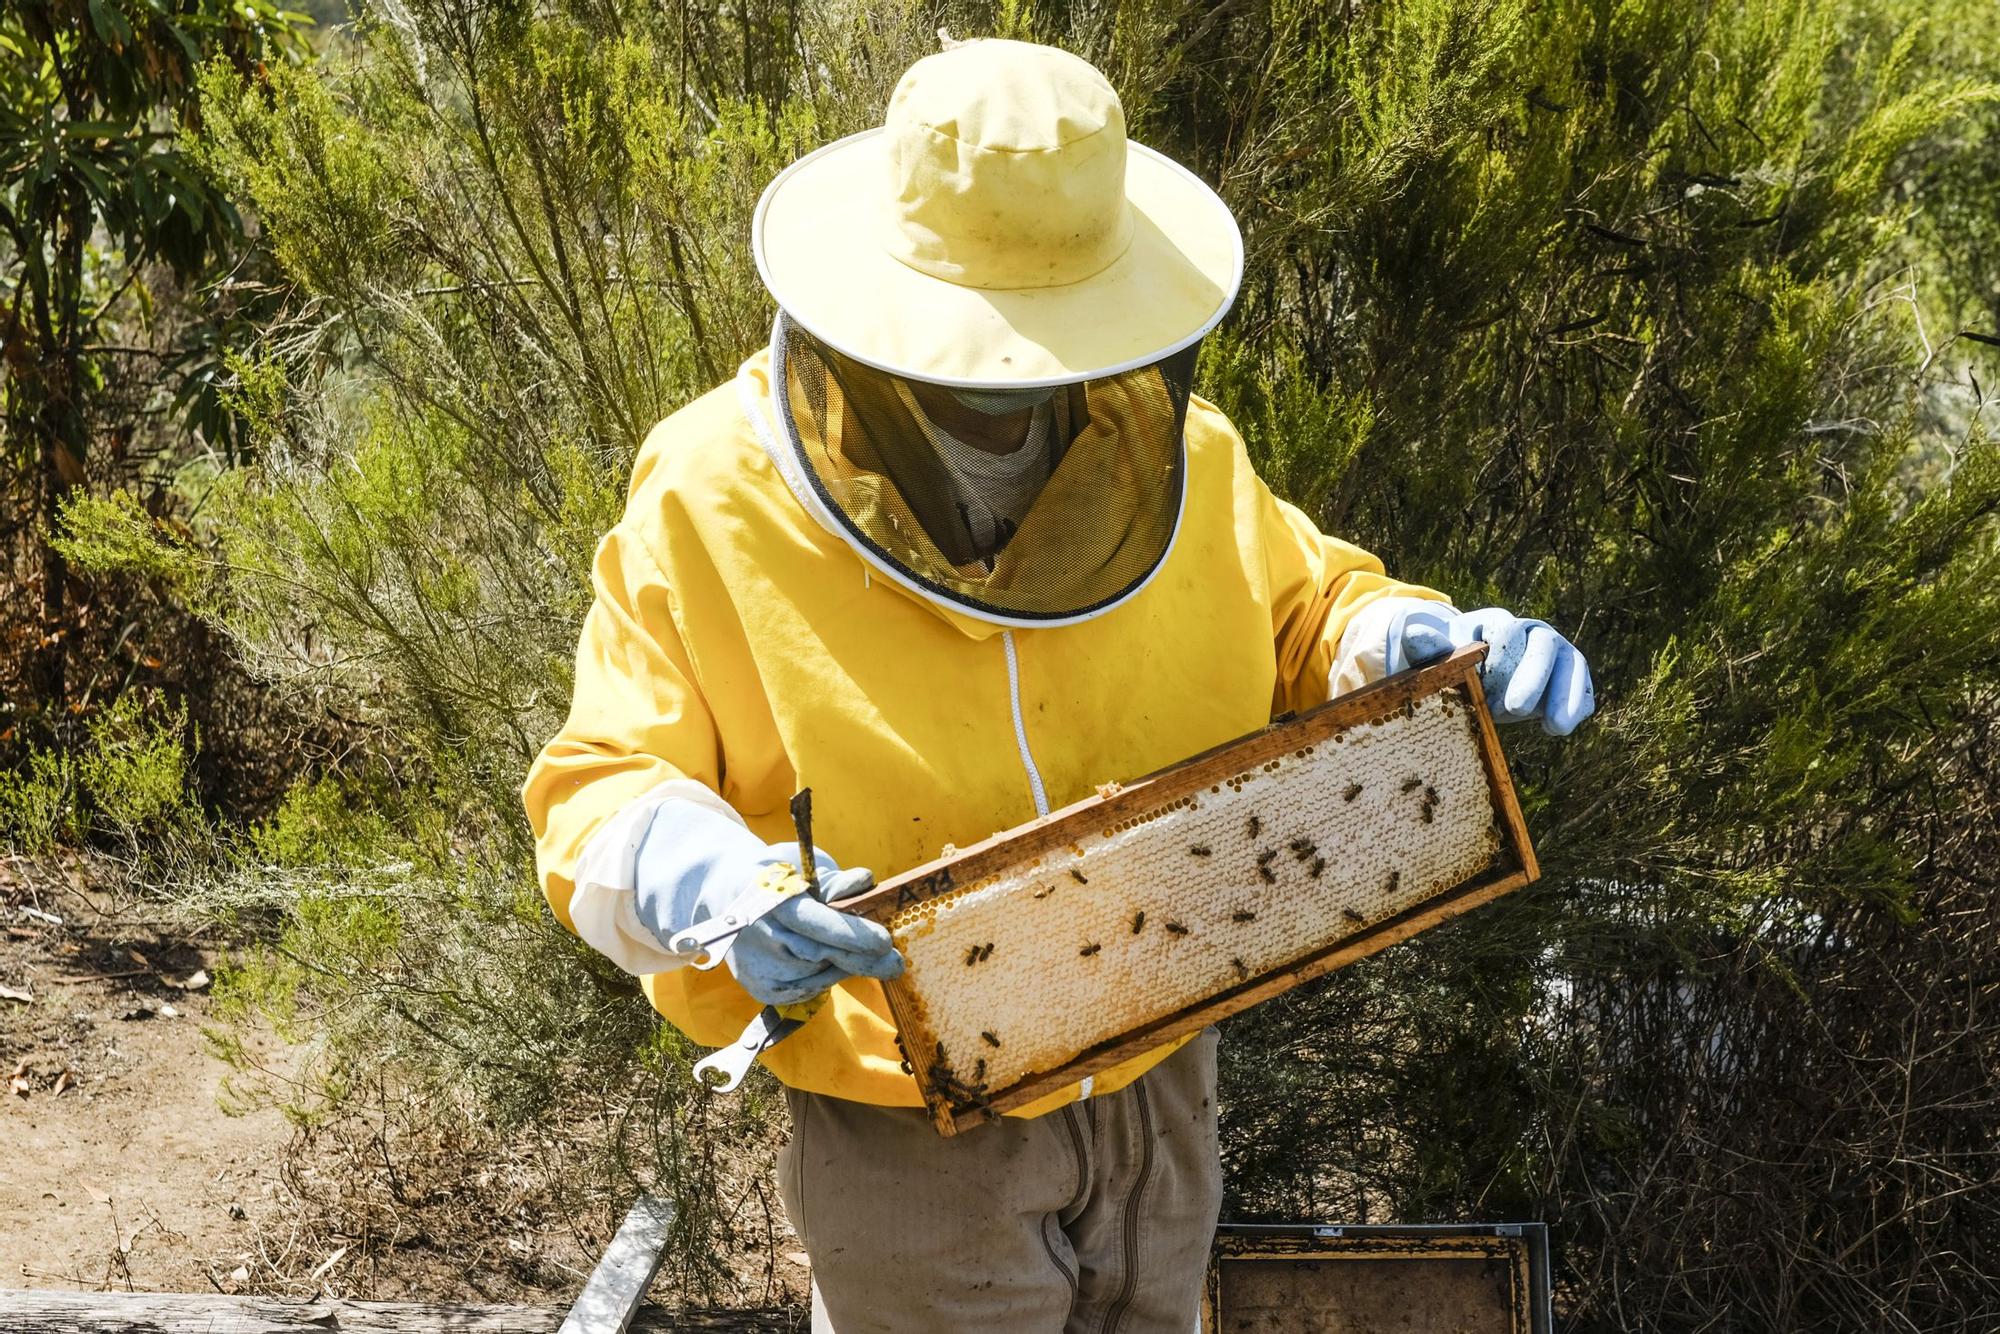 Colmenar en Moya del apicultor Iván Santana